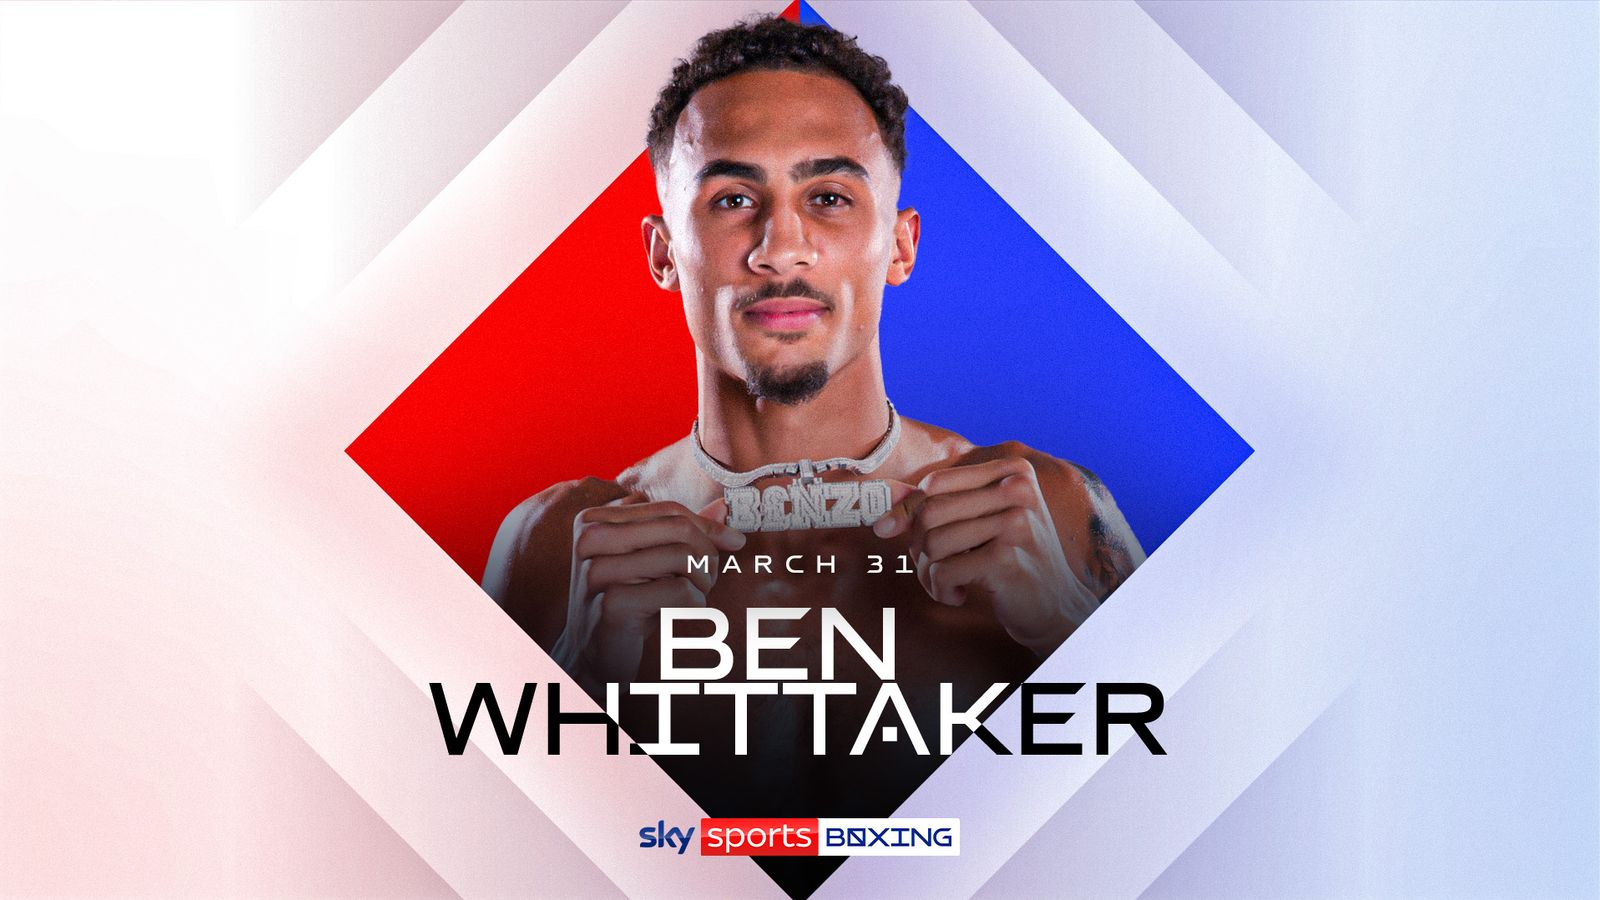 Ben Whittaker regresa en la cartelera secundaria de Fabio Wardley vs Frazer Clarke el 31 de marzo, en vivo por Sky Sports |  Noticias del boxeo